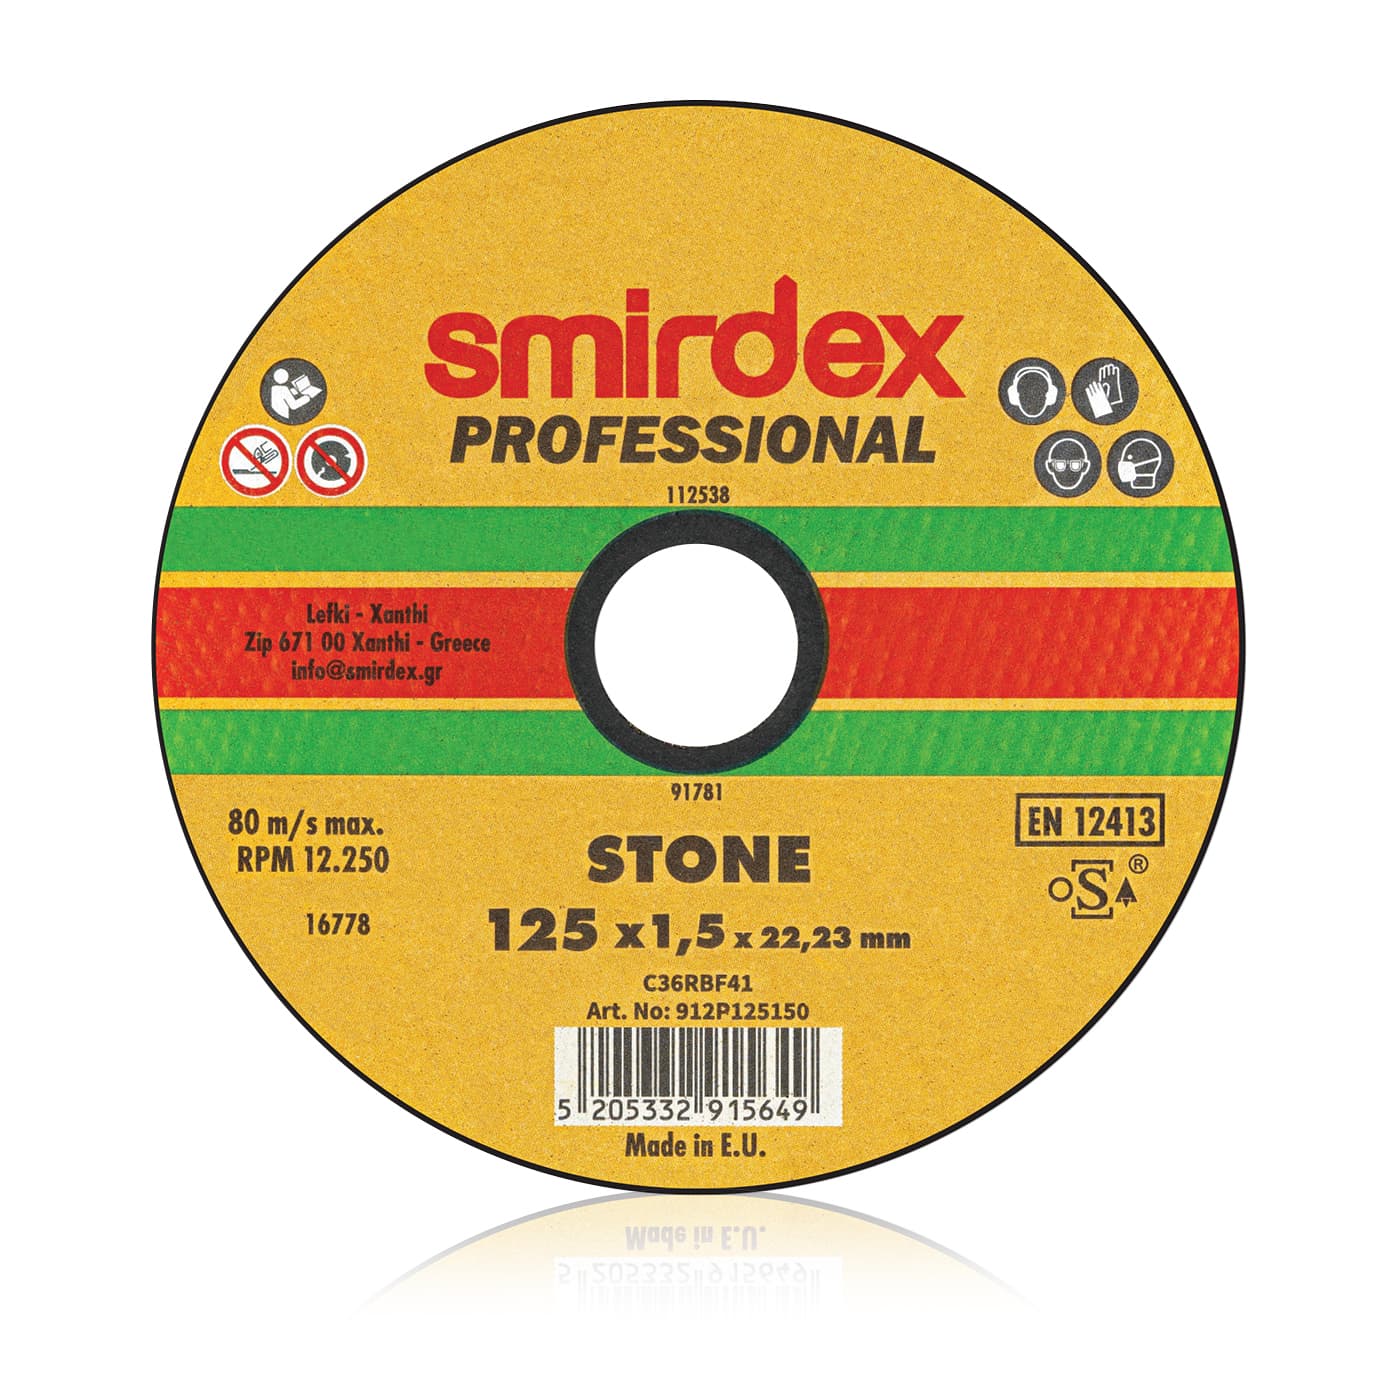 Smirdex professional marble cutting wheel 115x1.5x22.23